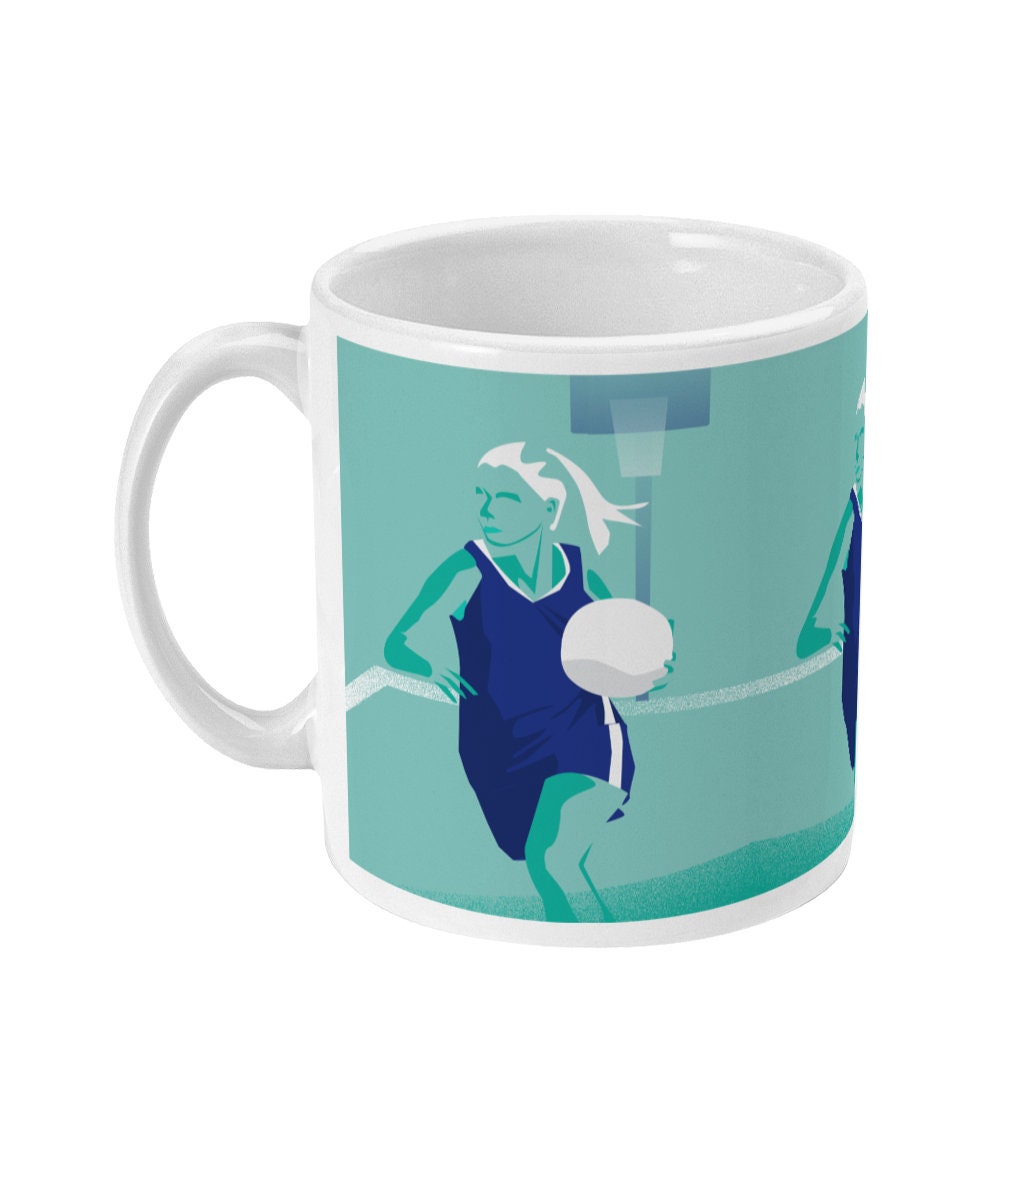 Basketball cup or mug "Axelle plays basketball" - Customizable